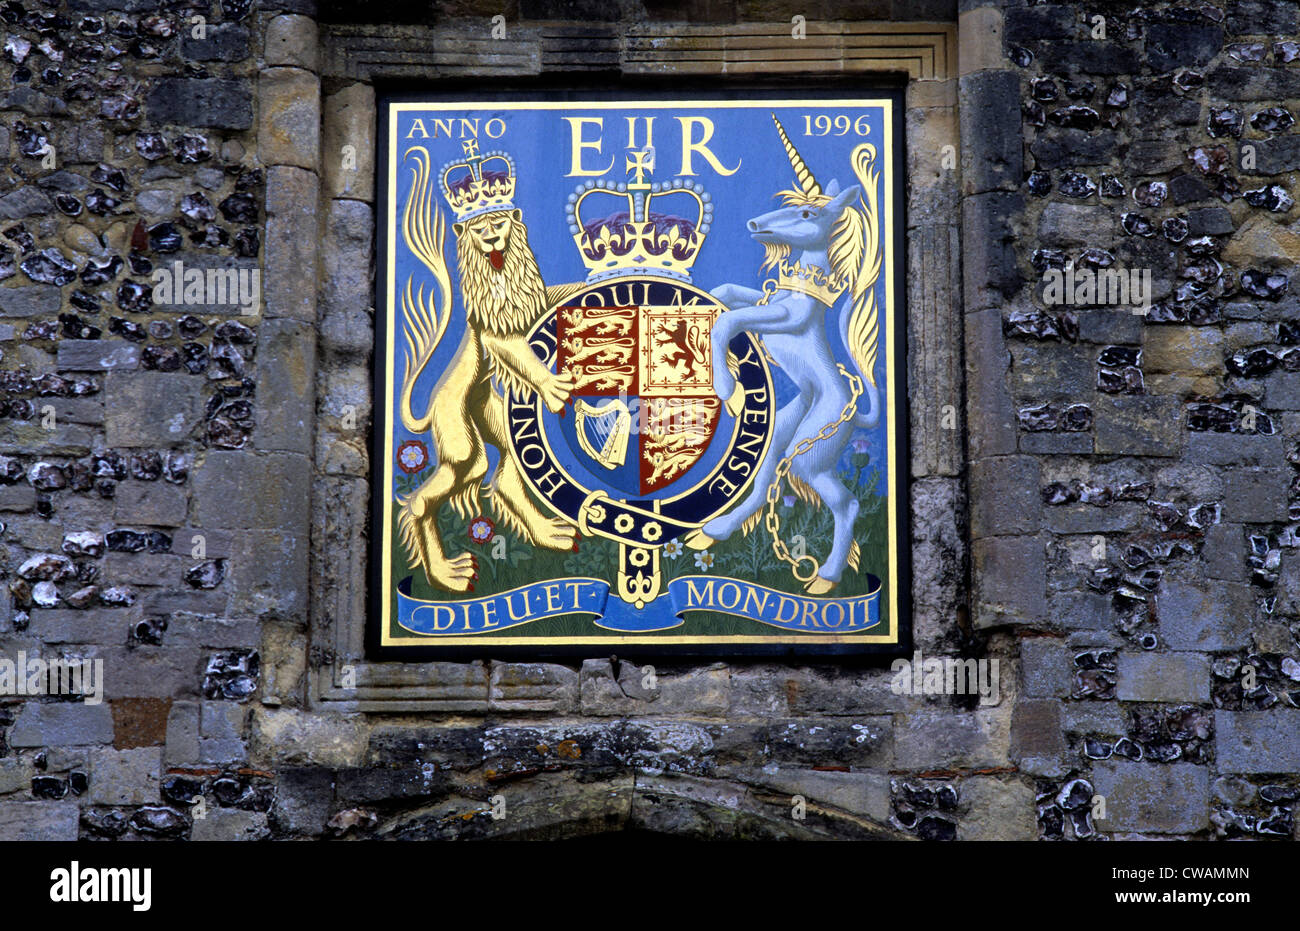 Armoiries de la reine Elizabeth 2e, Winchester Cathedral Gate Cité Elizabeth II, Royal image héraldique armoiries armorial Banque D'Images